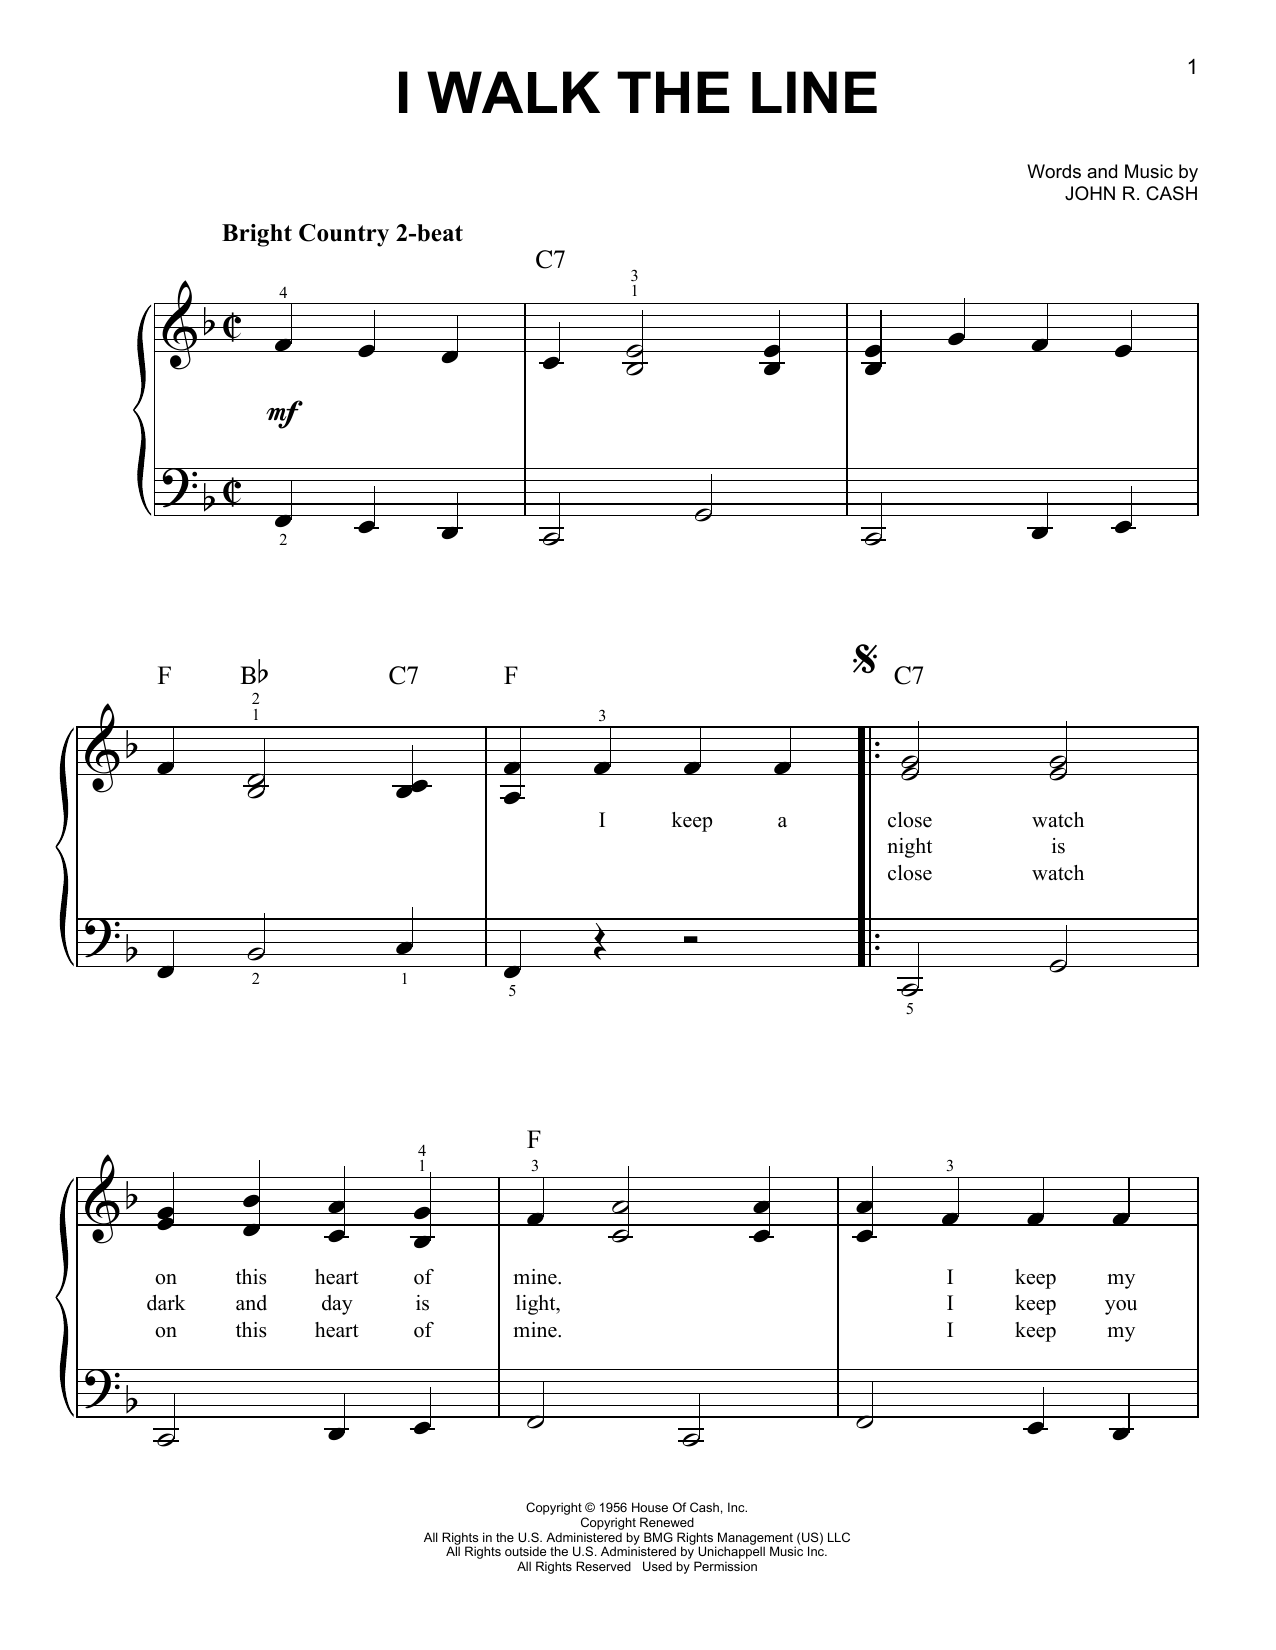 Johnny Cash I Walk The Line Sheet Music Notes & Chords for Ukulele - Download or Print PDF